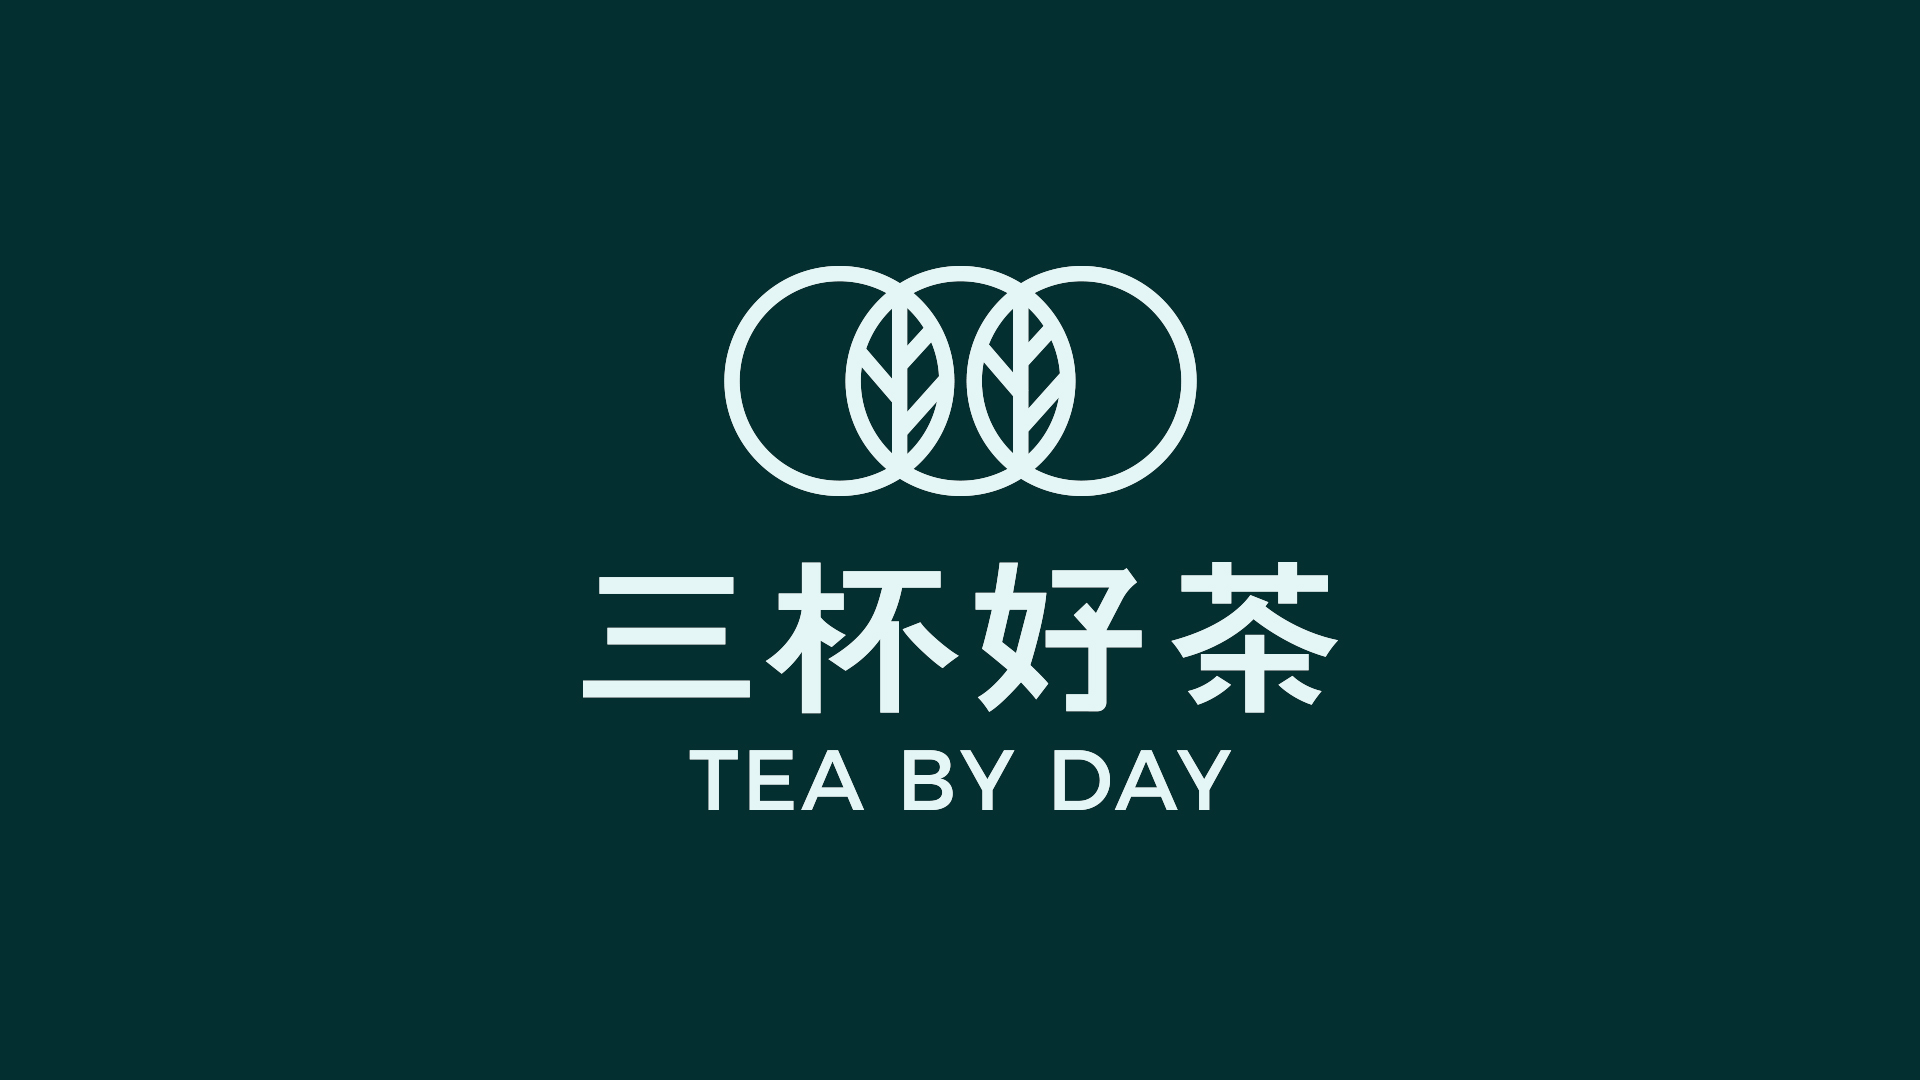 三杯好茶logo设计